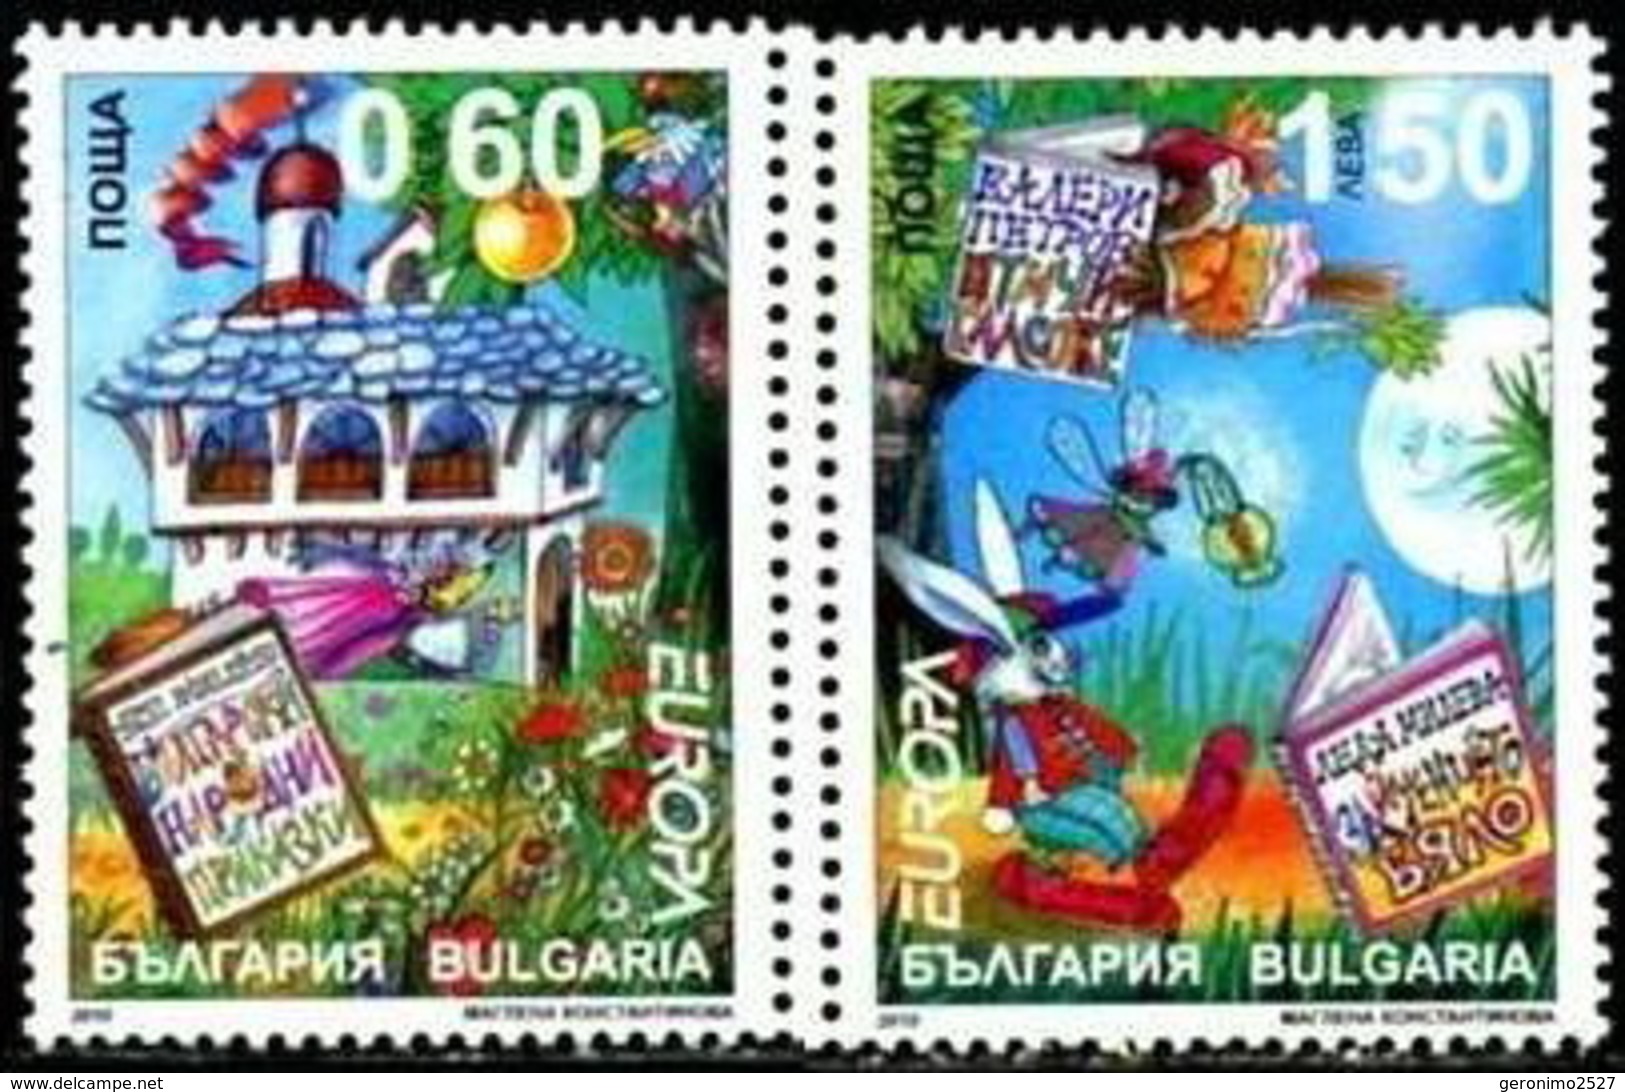 Europa CEPT 2010 BULGARIA Children´s Books - Fine Set MNH - 2010